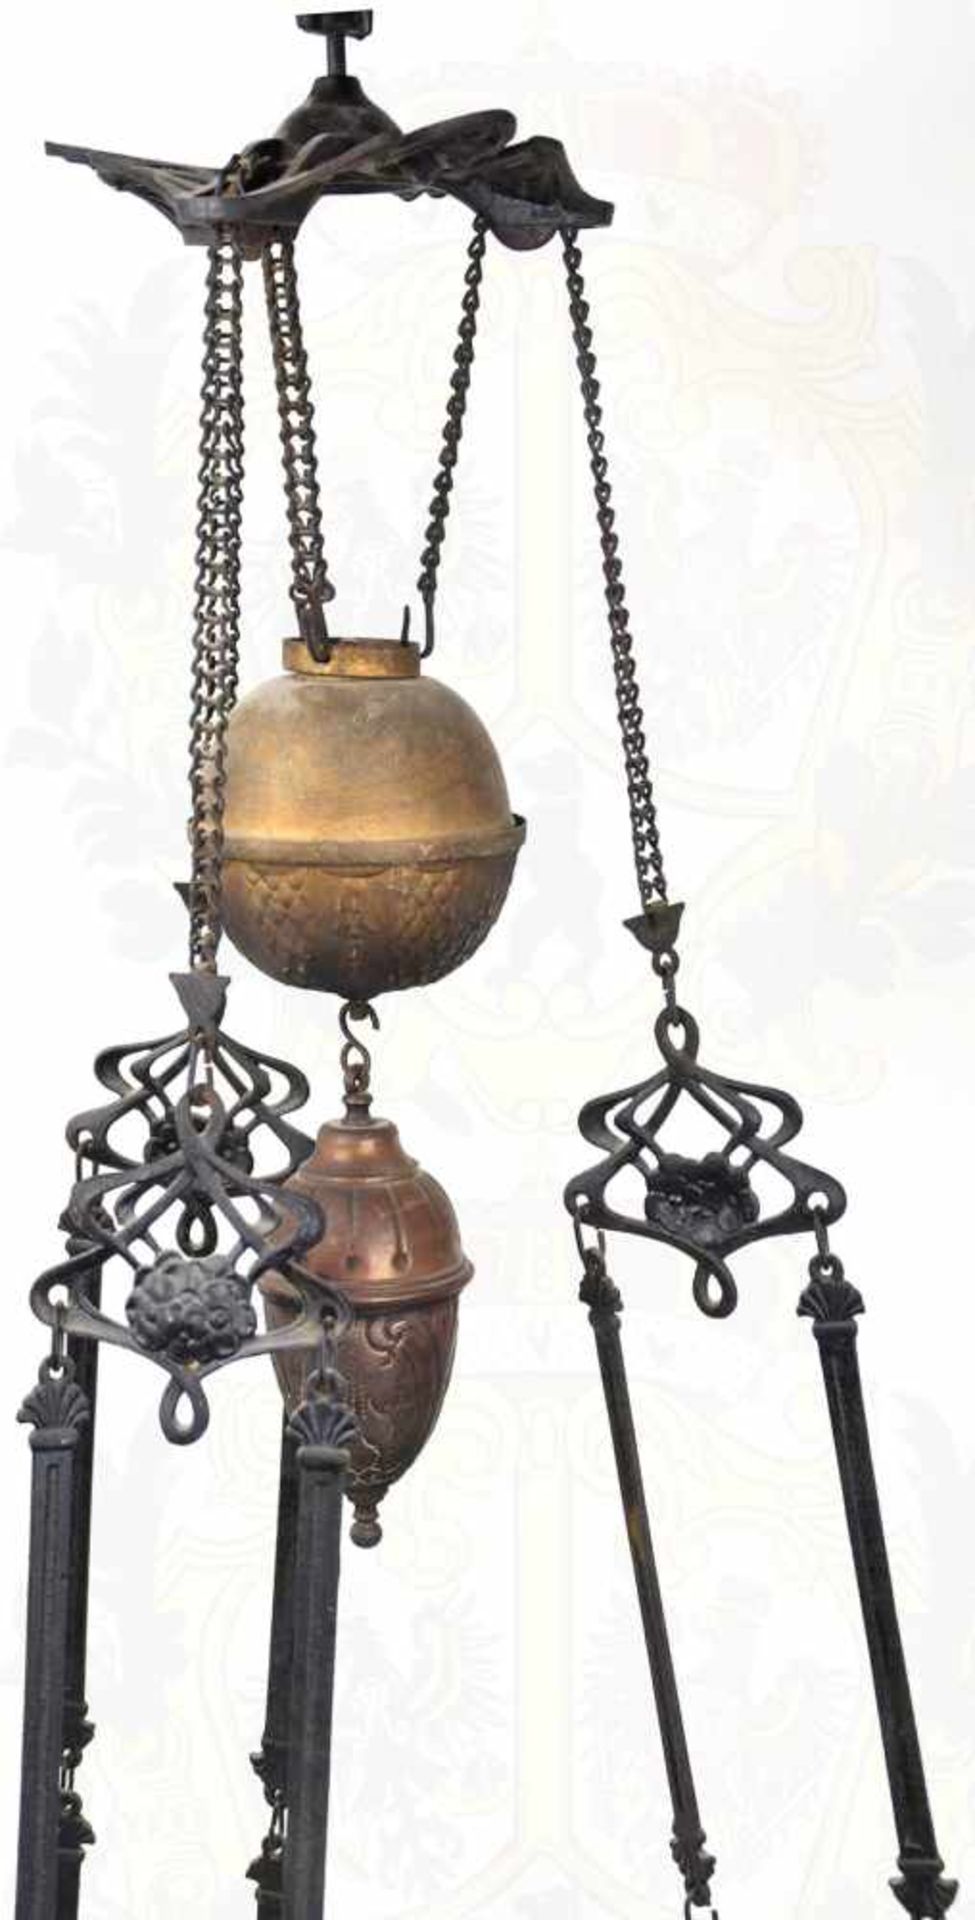 DECKENLEUCHTE, mehrteiliges Gestell aus Eisen mit Verzierungen, Kettengliedern zur Aufhängung, - Bild 2 aus 3